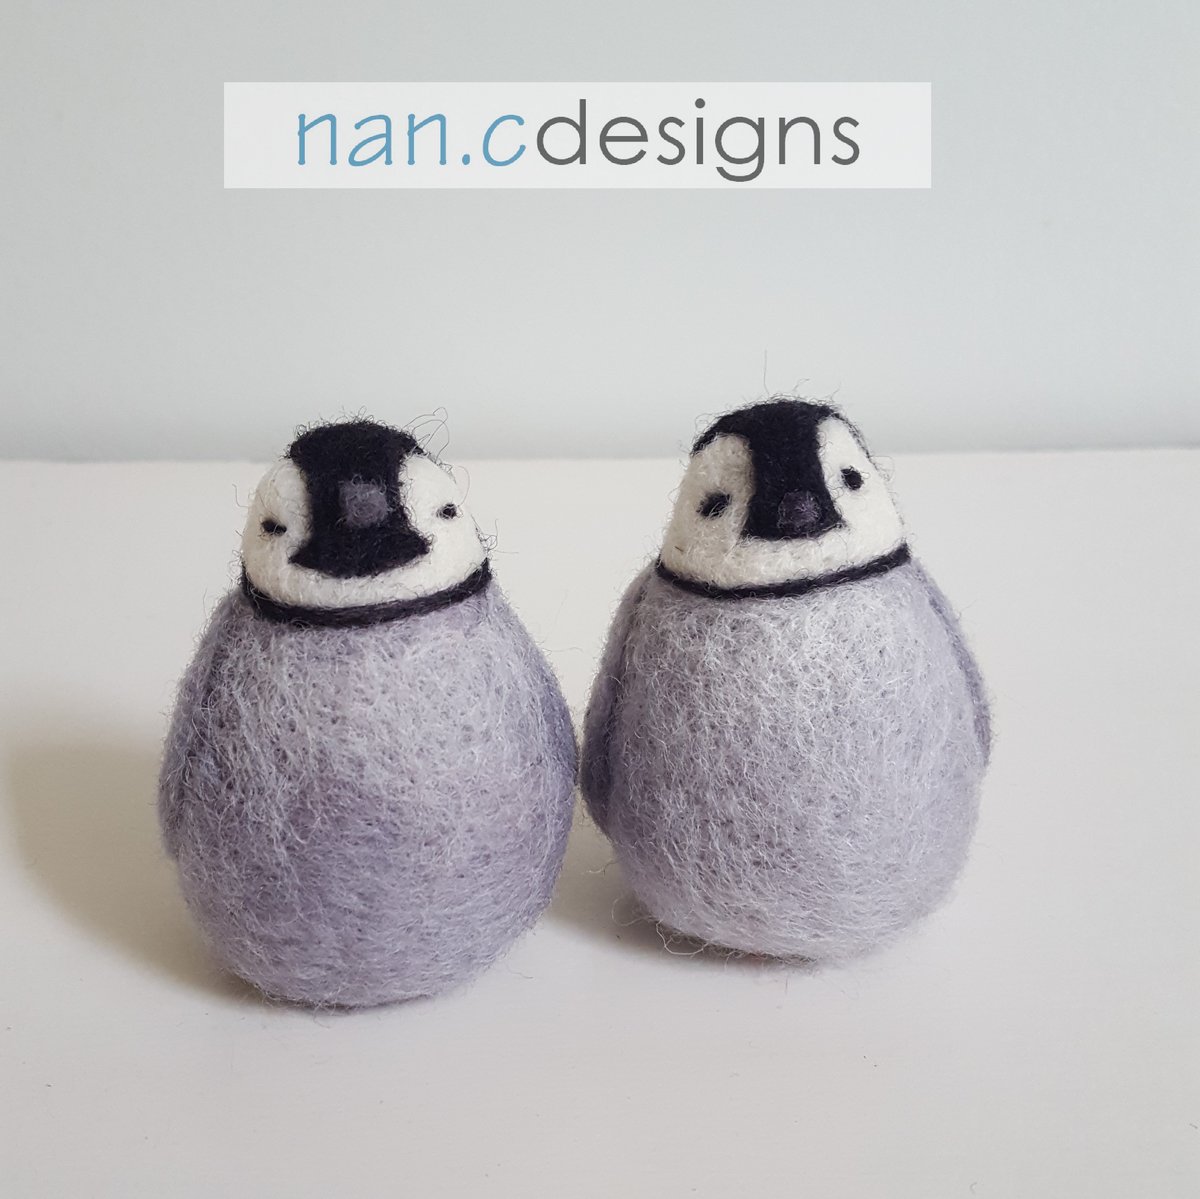 Baby Penguin - Needle Felting Kit